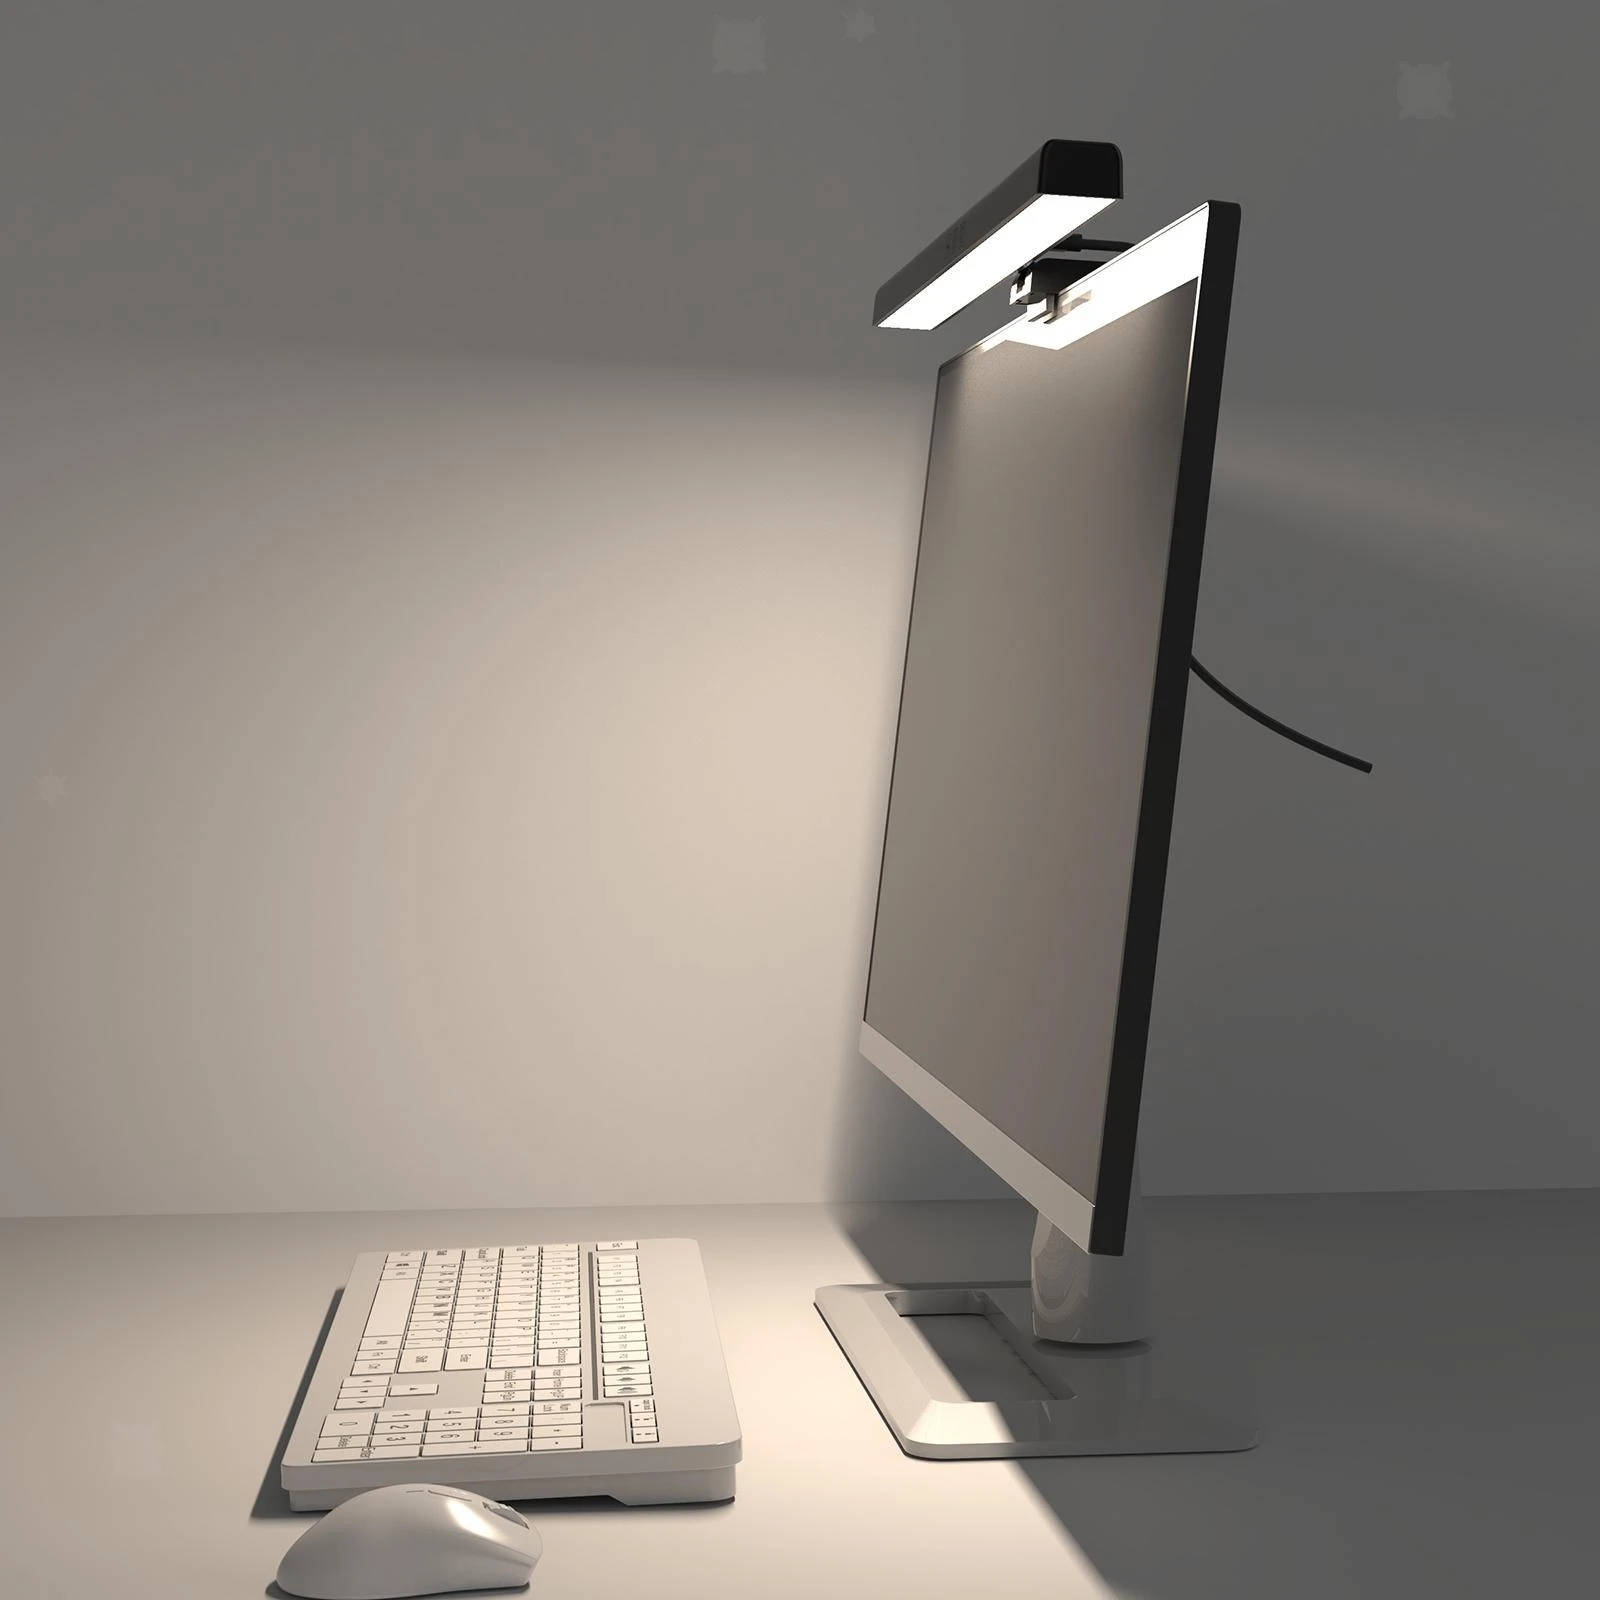 Tikkens - Lampe ecran pc - LED USB dimmable Monitor Light Bar - Lumière Bar  - Lampe connectée - Rue du Commerce